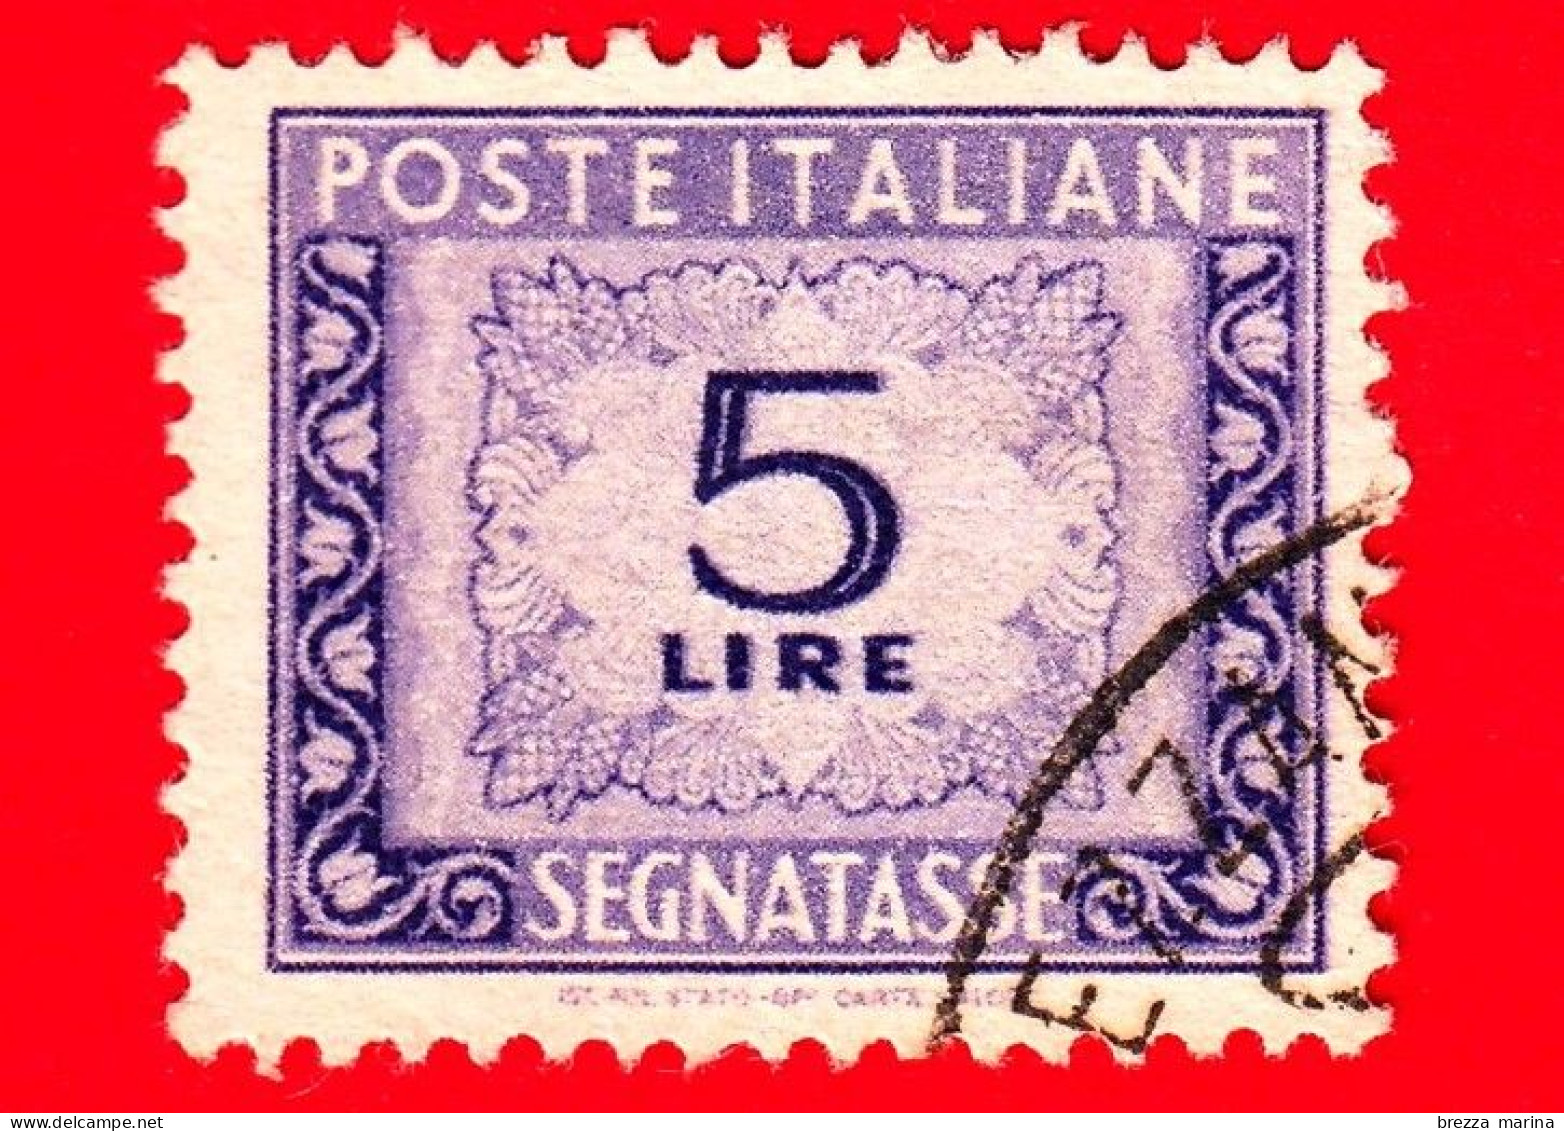 ITALIA - Usato - 1947 - Cifra E Decorazioni, Filigrana Ruota - Segnatasse - 5 L. • Cifra E Decorazioni - Impuestos